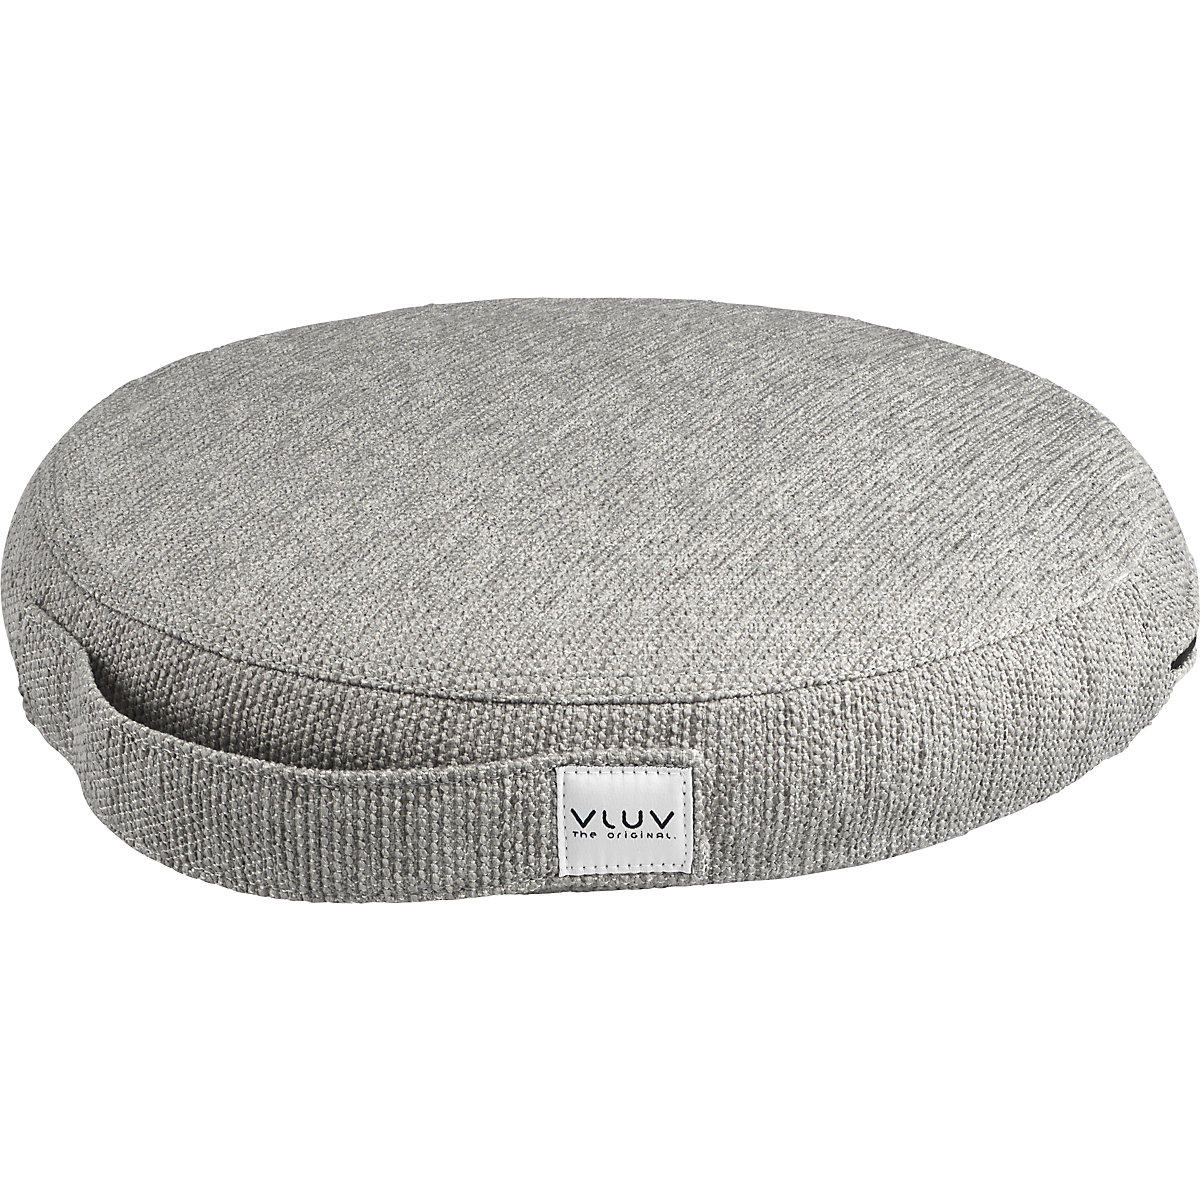 Cuscino per equilibrio PIL&PED STOV – VLUV, con rivestimento in tessuto, Ø 360 mm, grigio cemento-11